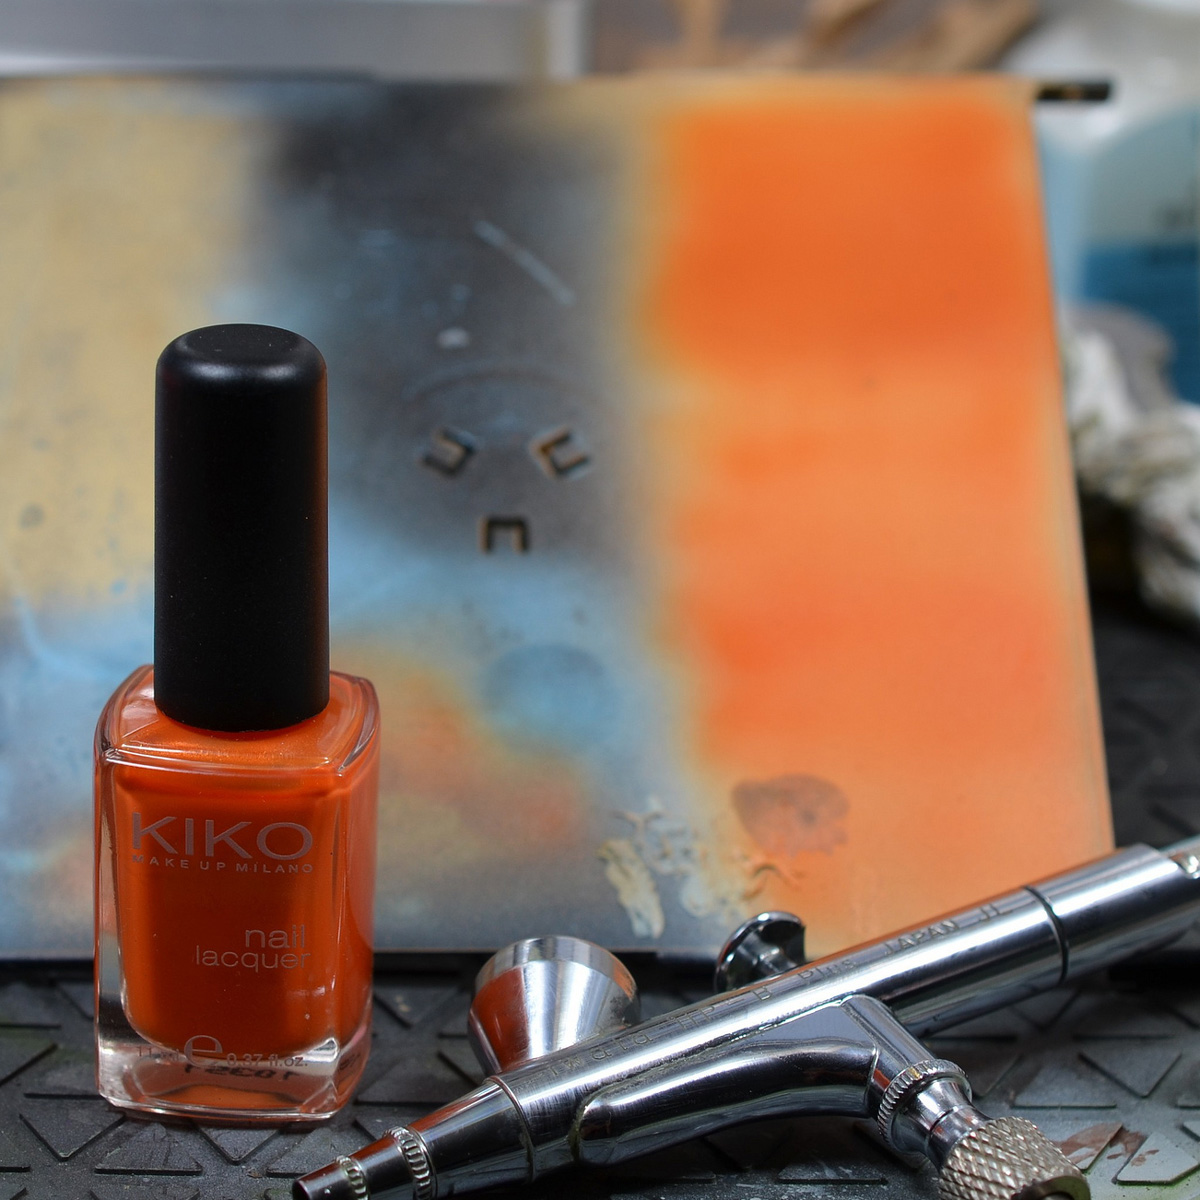 Nail Art Tutorial: Airbrushing Nails